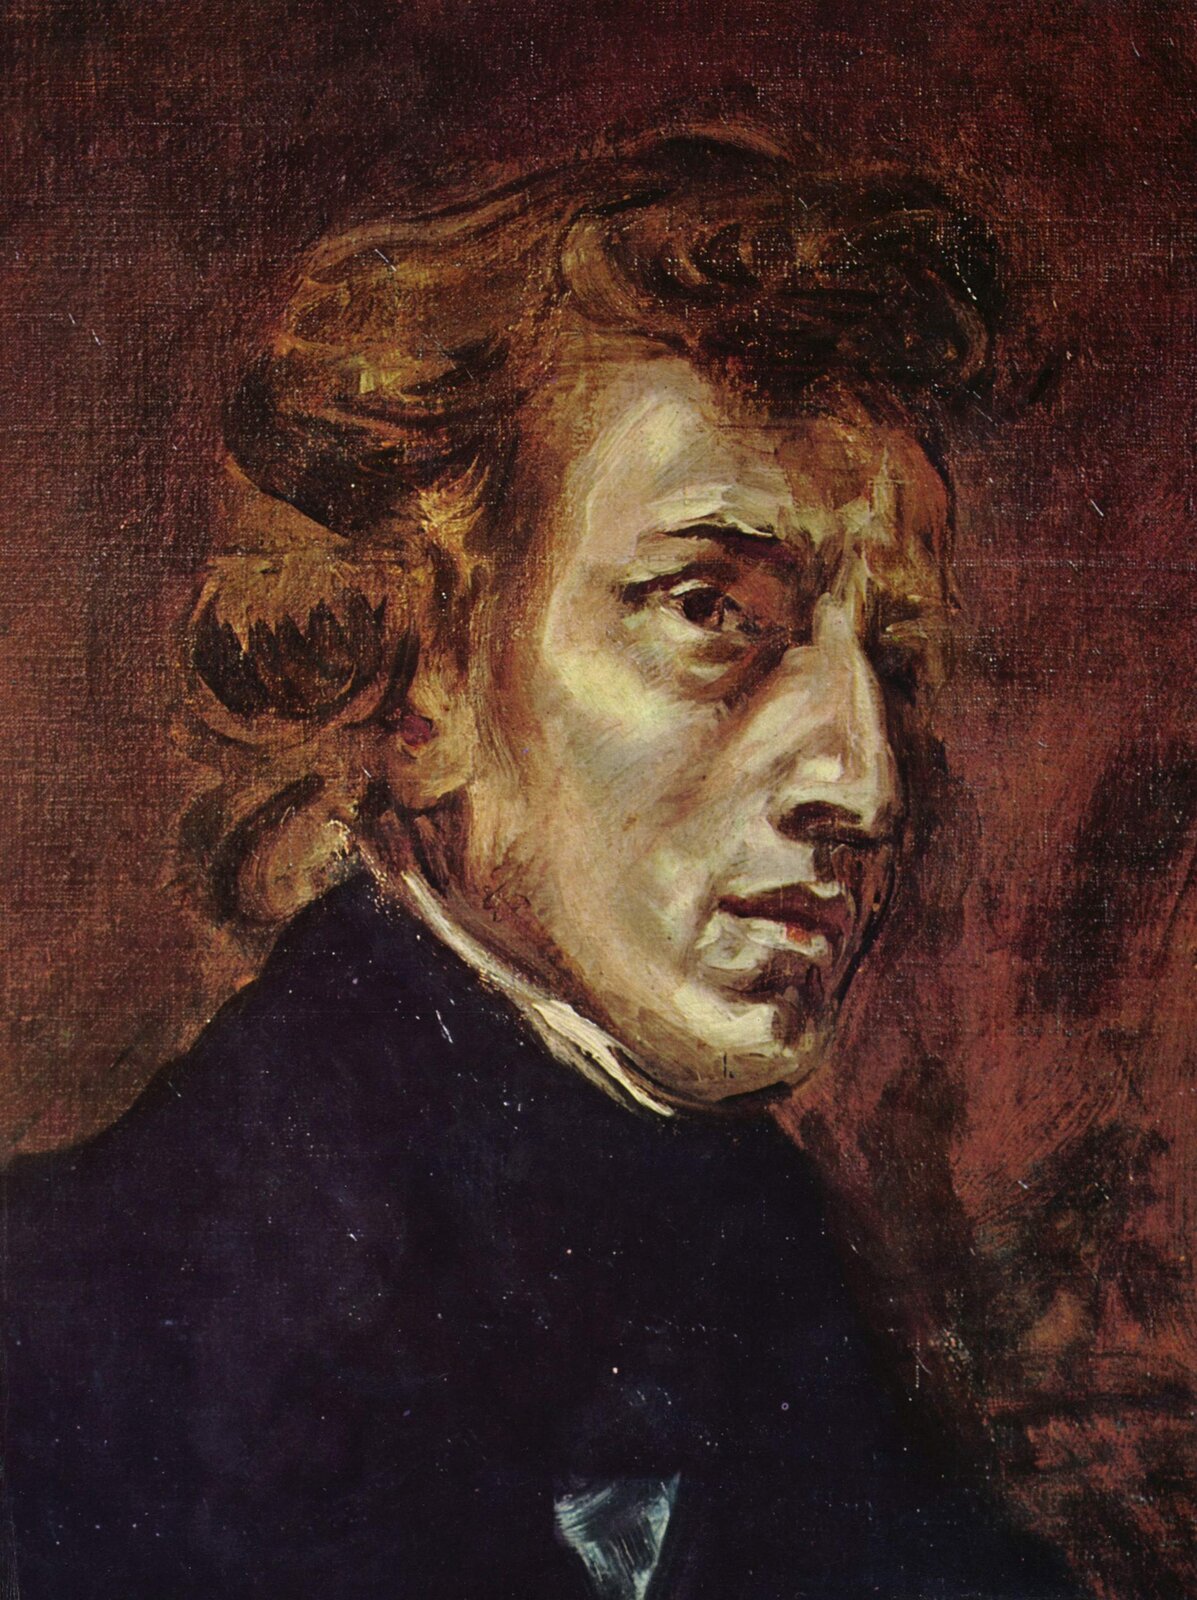 Ilustracja przedstawia portret Fryderyka Chopina namalowanego przez Eugène Delacroix. Kompozytor ma lekko spiczasty nos. Włosy lokowane, dłuższe w kolorze brązu. Ubrany w ciemny garnitur.